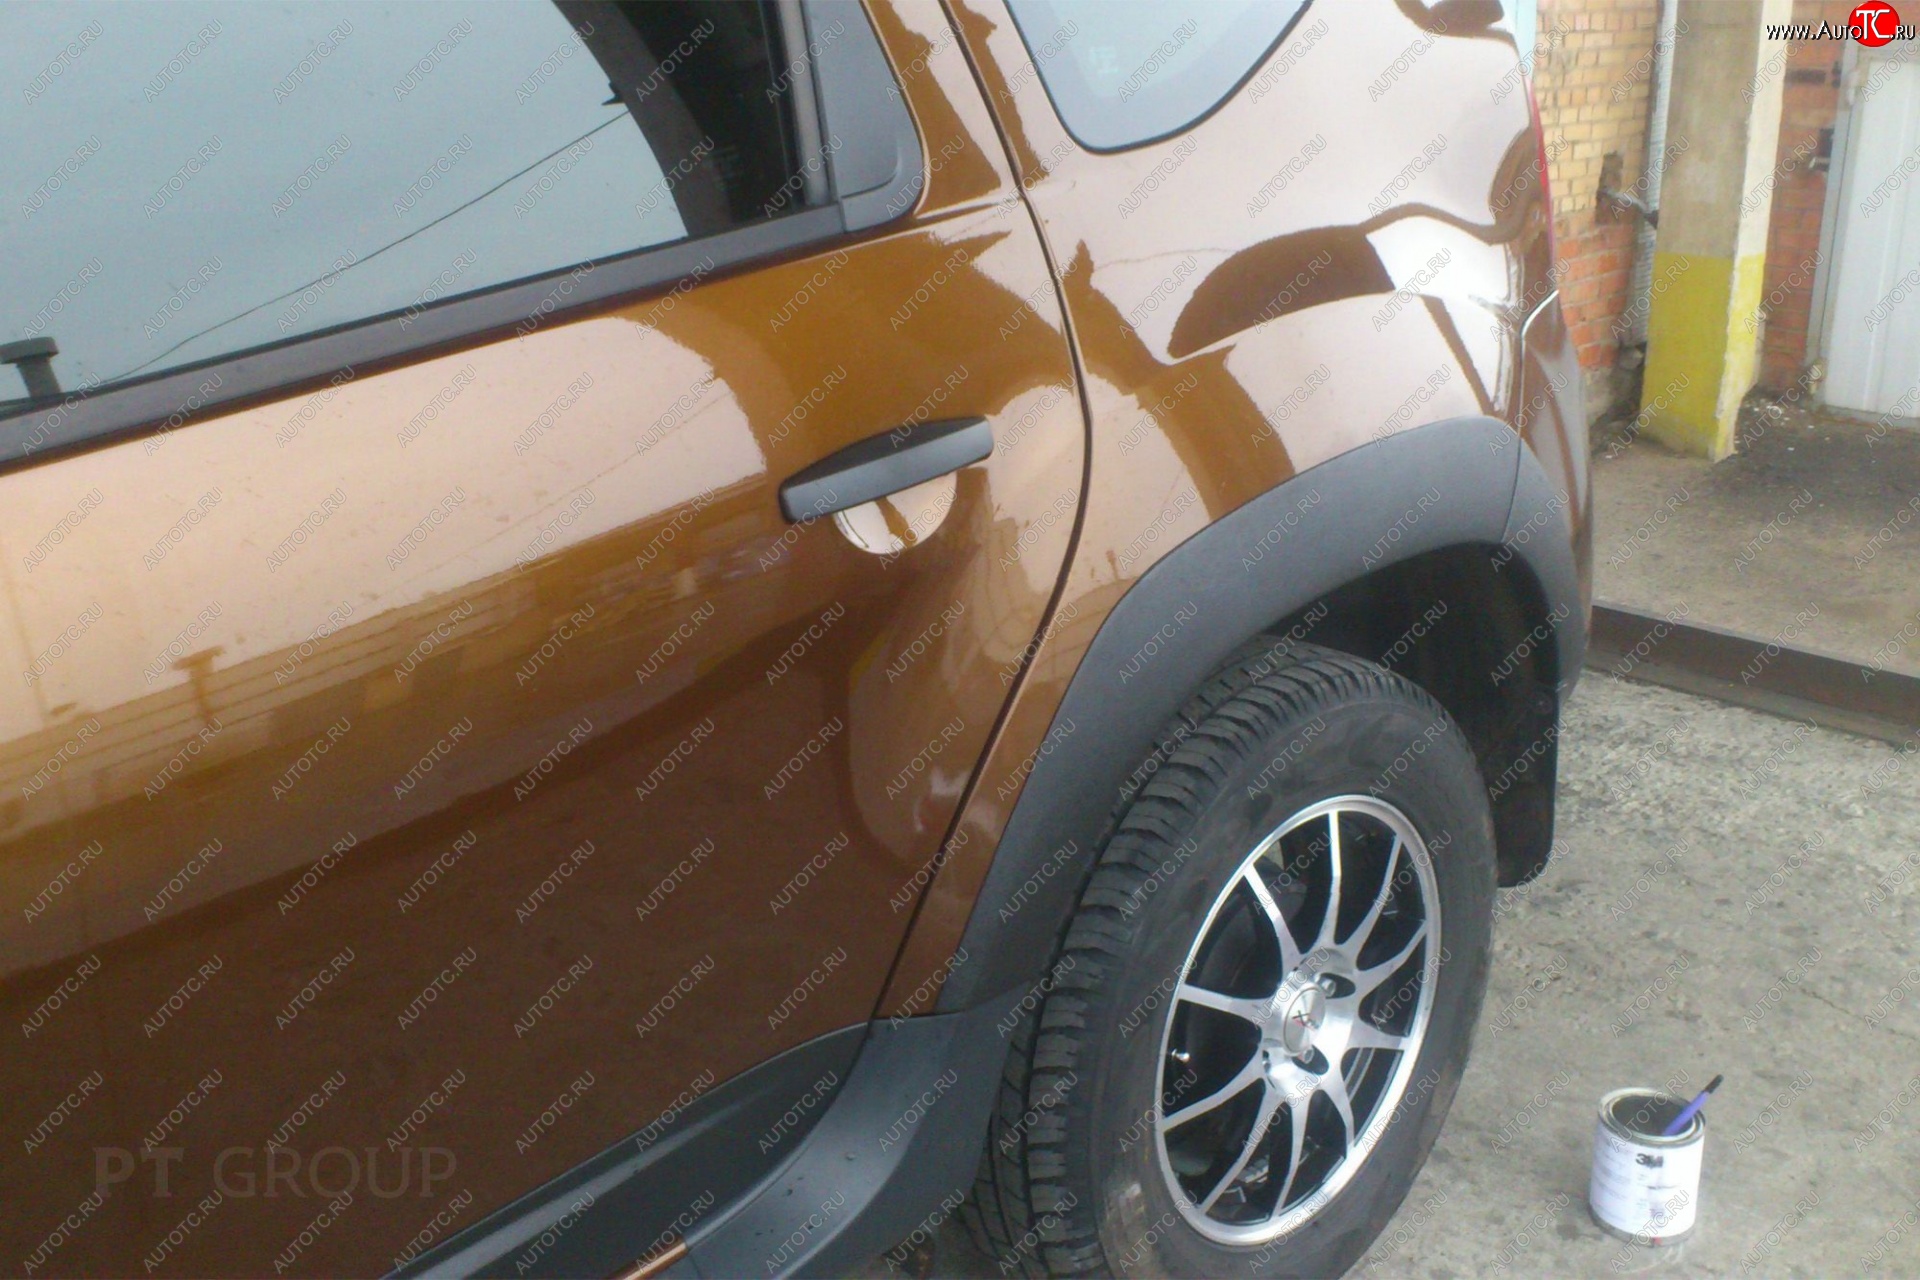 5 999 р. Комплект накладок на колёсные арки Petroil Tuning Renault Duster HS рестайлинг (2015-2021) (Текстурная поверхность)